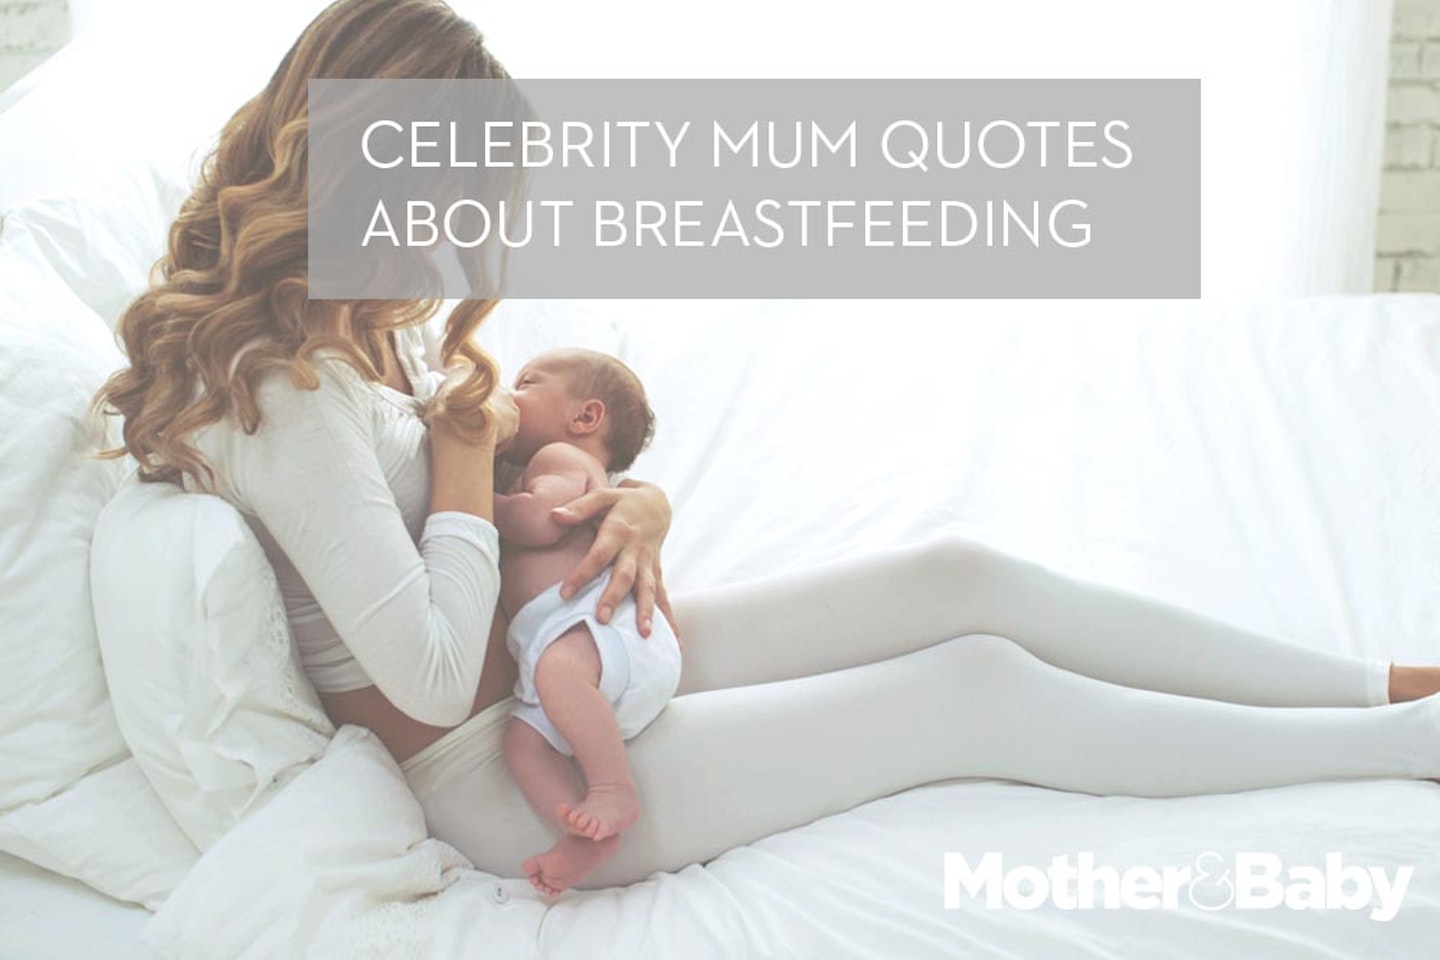 Celebs breastfeeding